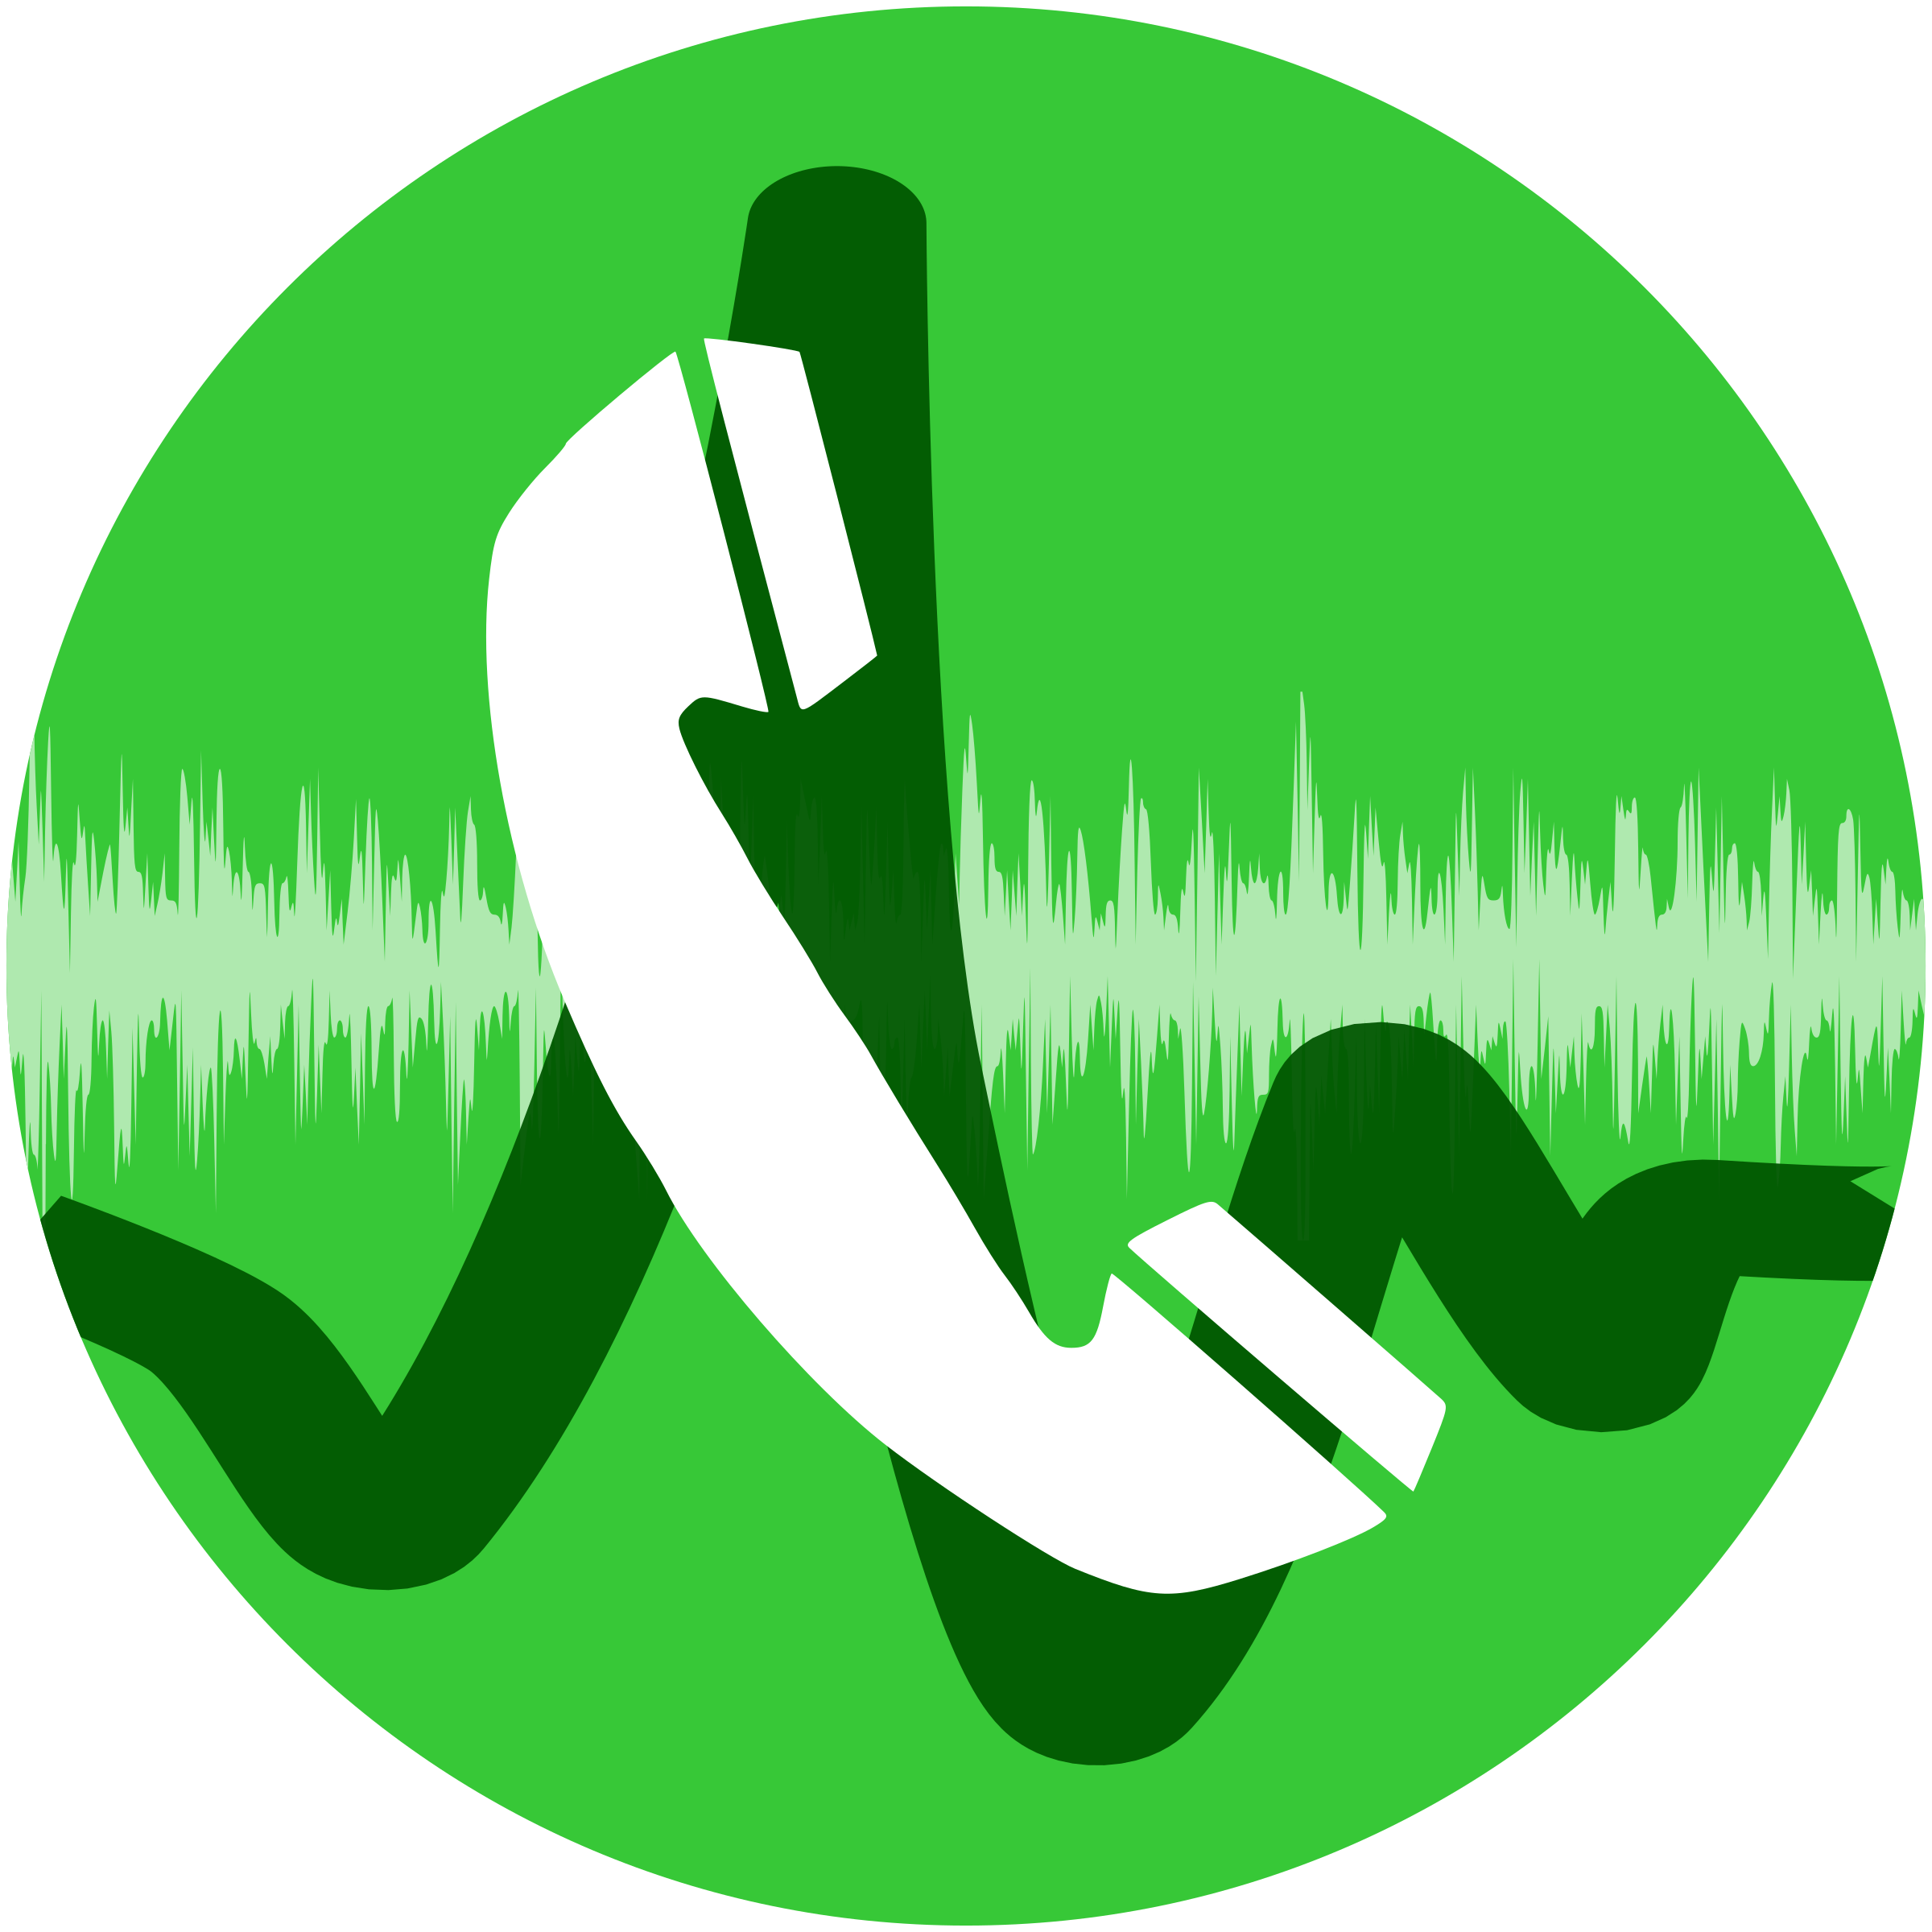 Calling icon. Значок вызова на телефоне. Телефонная трубка. Пиктограмма телефонный разговор. Значок телефона зеленый.